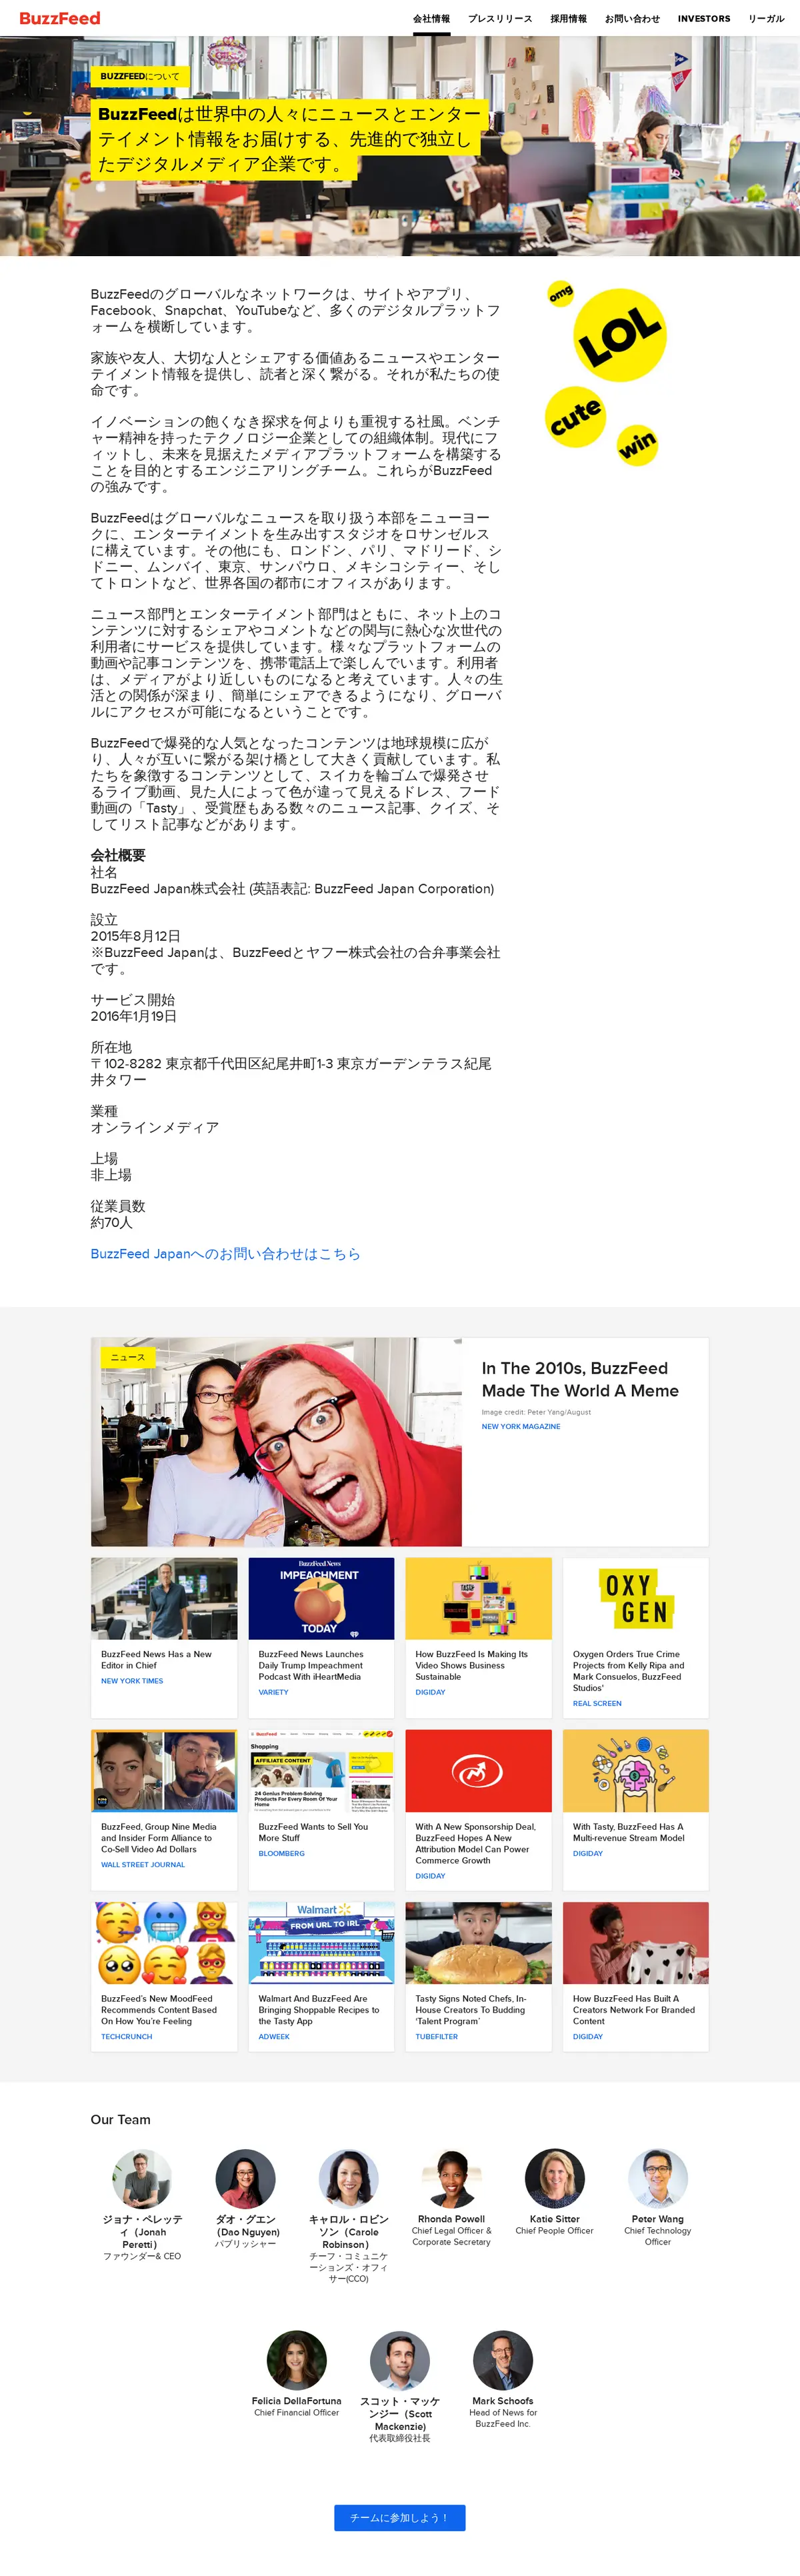 キャプチャ画面 会社名:BuzzFeed Japan株式会社プロジェクト名:BuzzFeed Japan株式会社 画面名:全国トップ デバイス名:PCカテゴリ:広告・クリエイティブタグ:PC,全国トップ